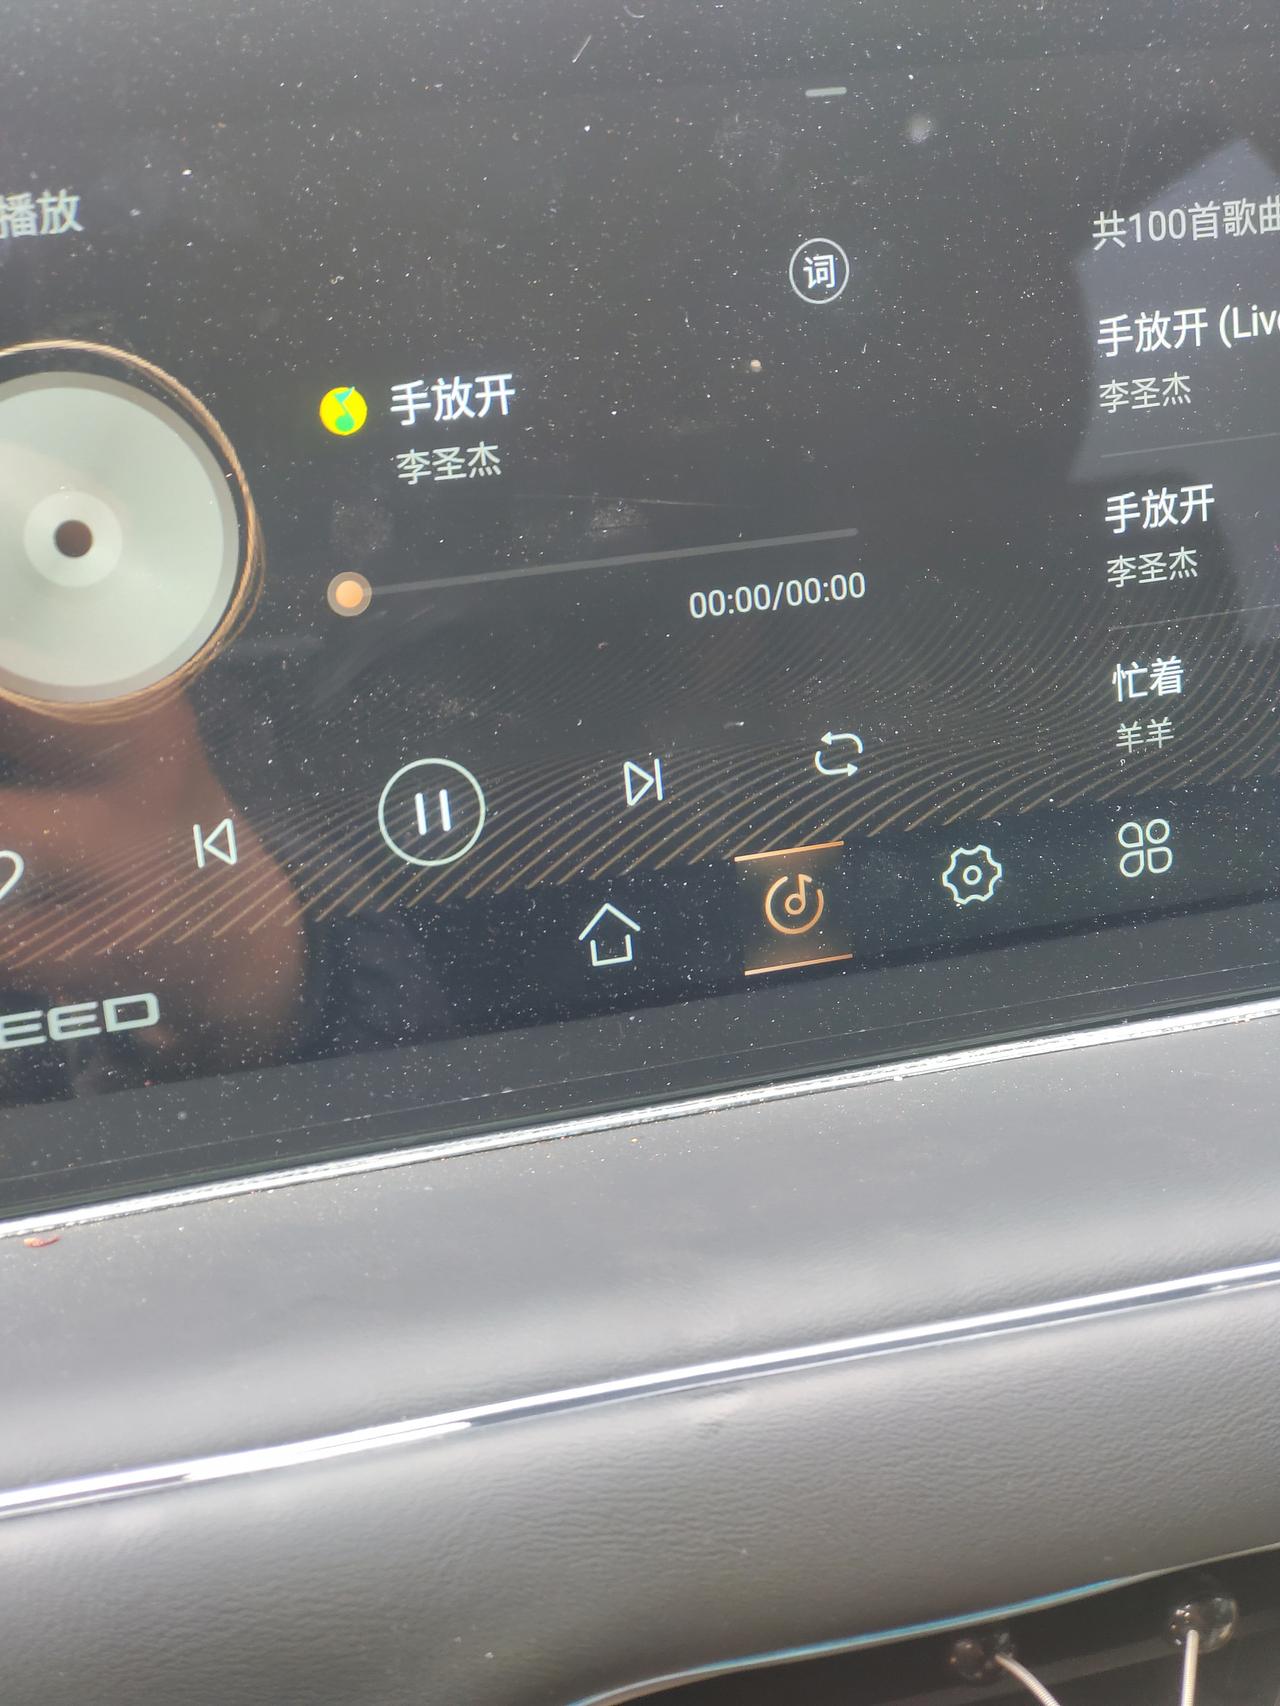 星途凌云 凌云 车上的联网QQ音乐为什么播放不了歌曲了？没有声音 显示的播放错误    但是可以正常听USB的歌曲，流量